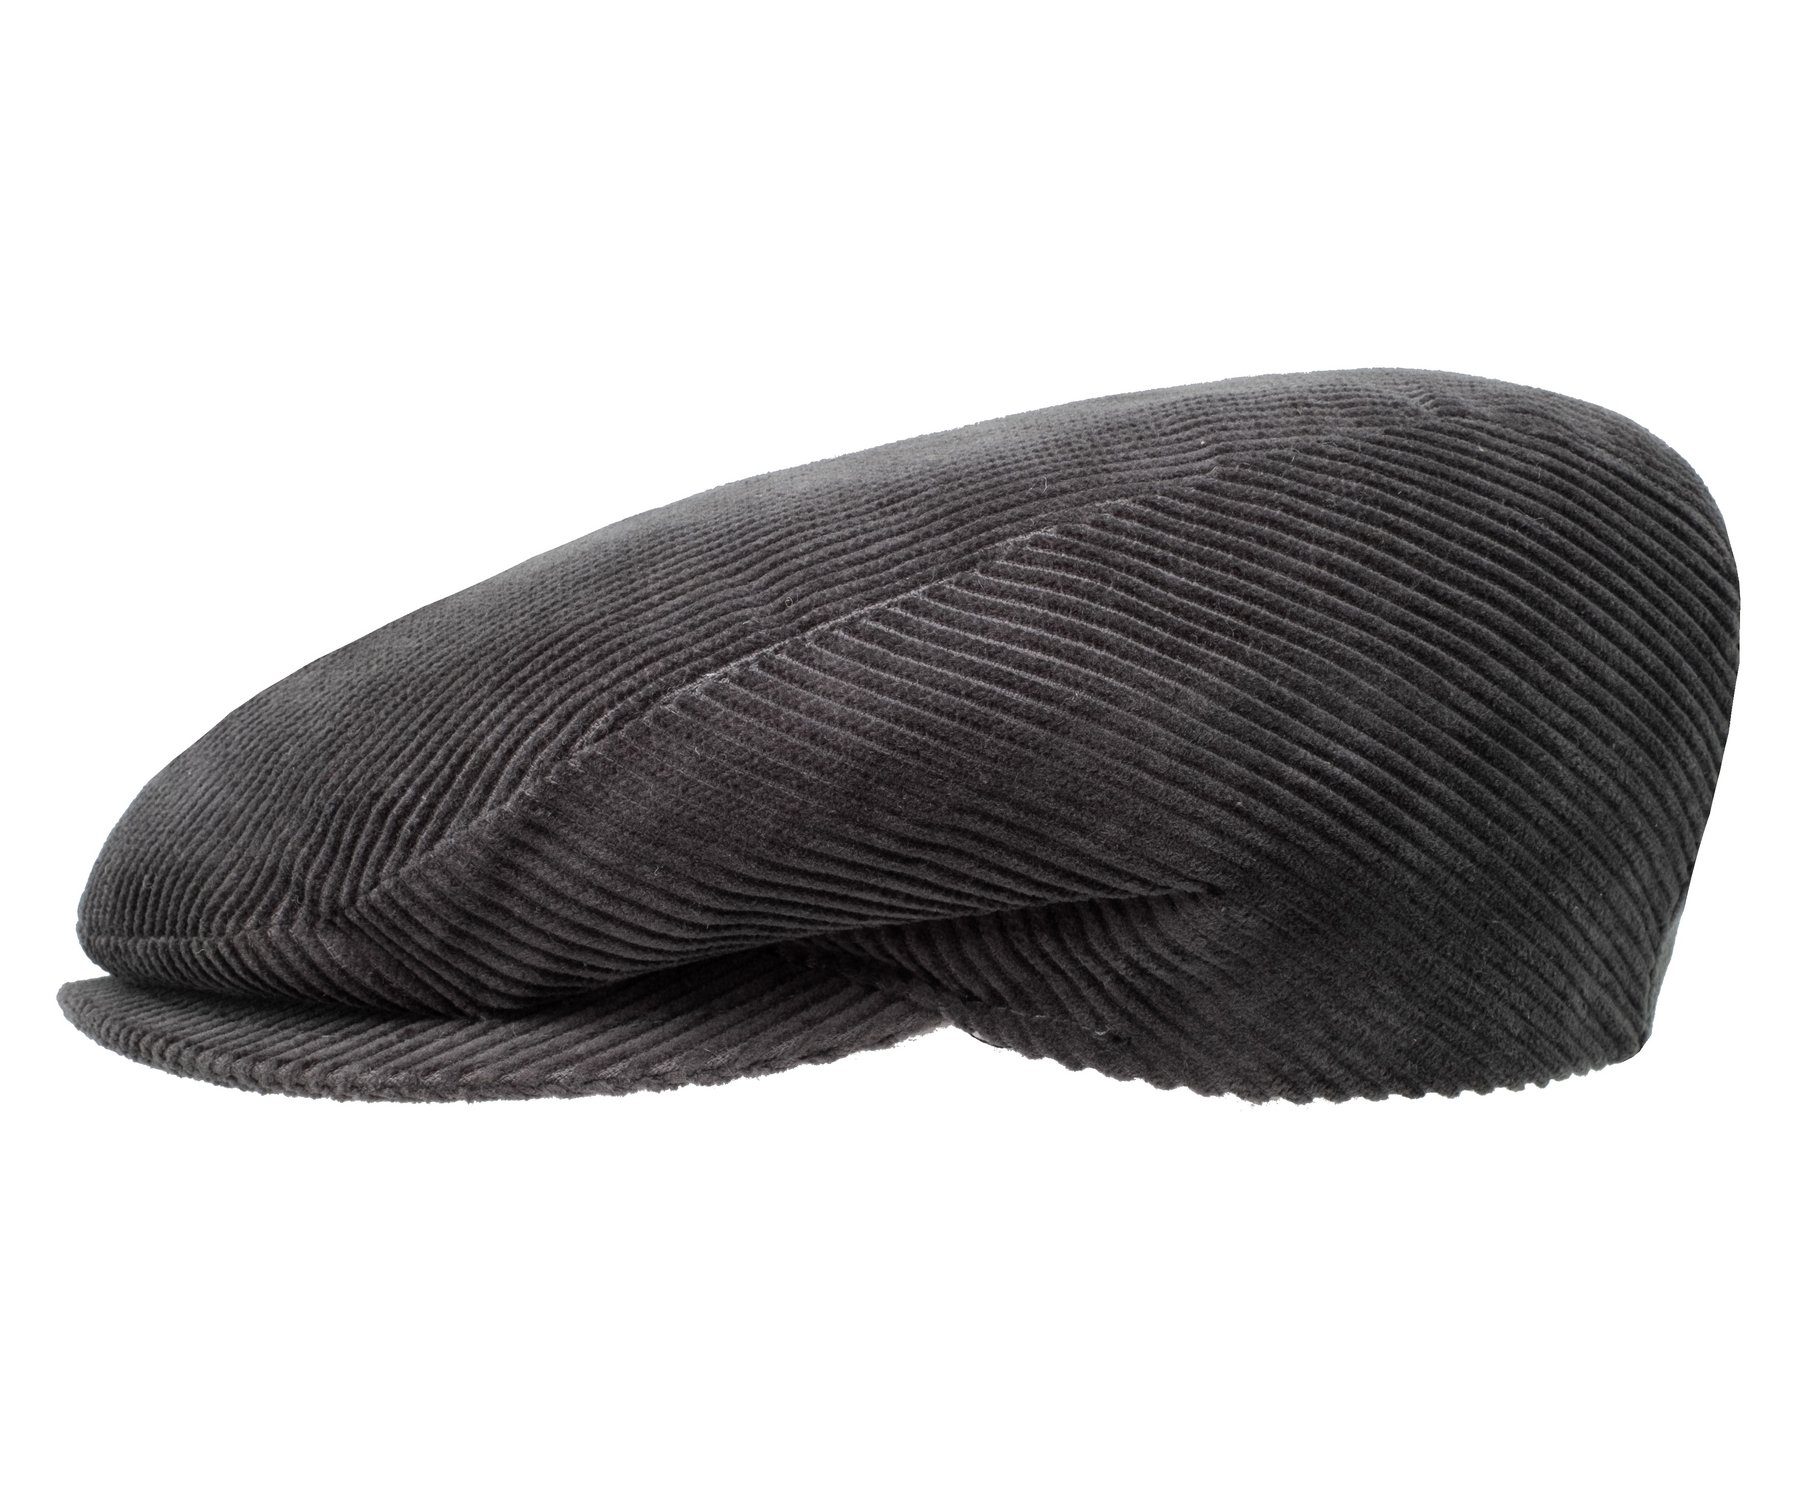 Cordmütze in schwarz Kappe Mütze Cap Flatcap neu 